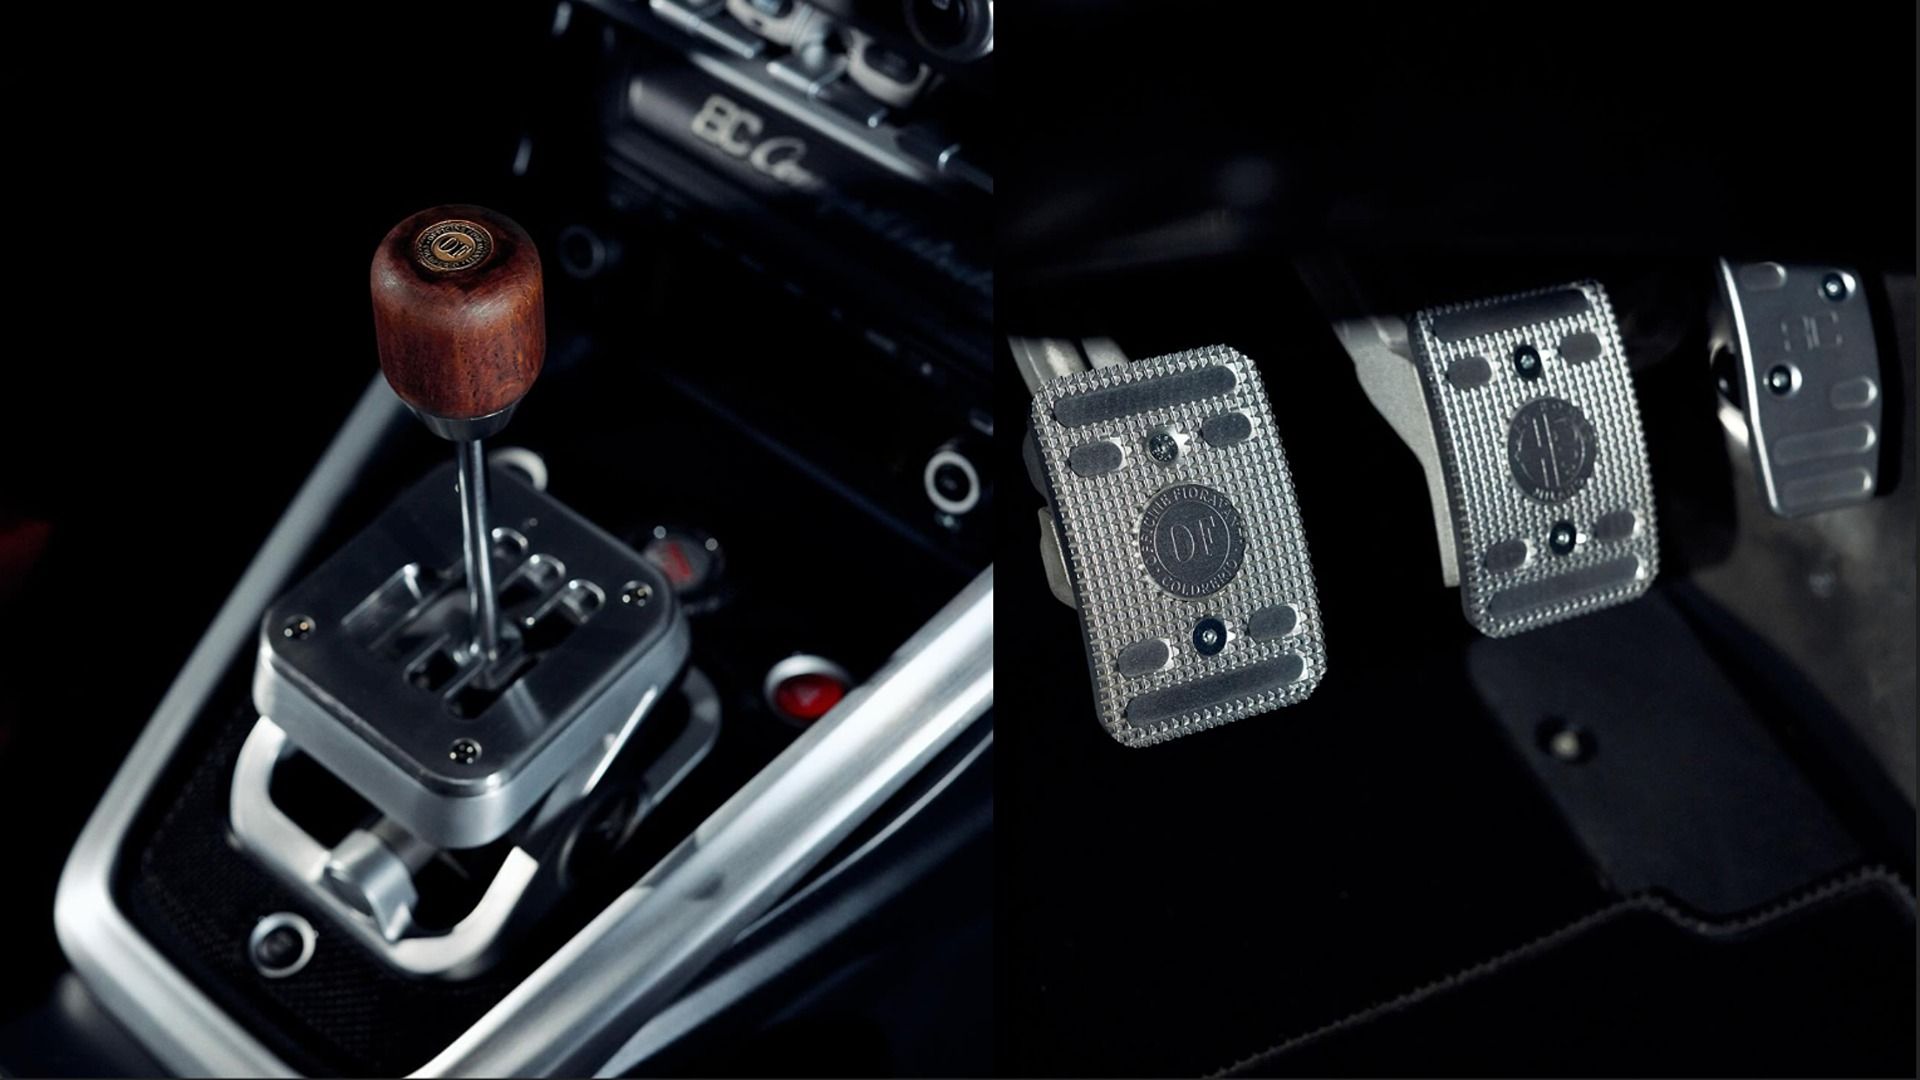 Alfa Romeo 8C Competizione interior, gear lever and pedals